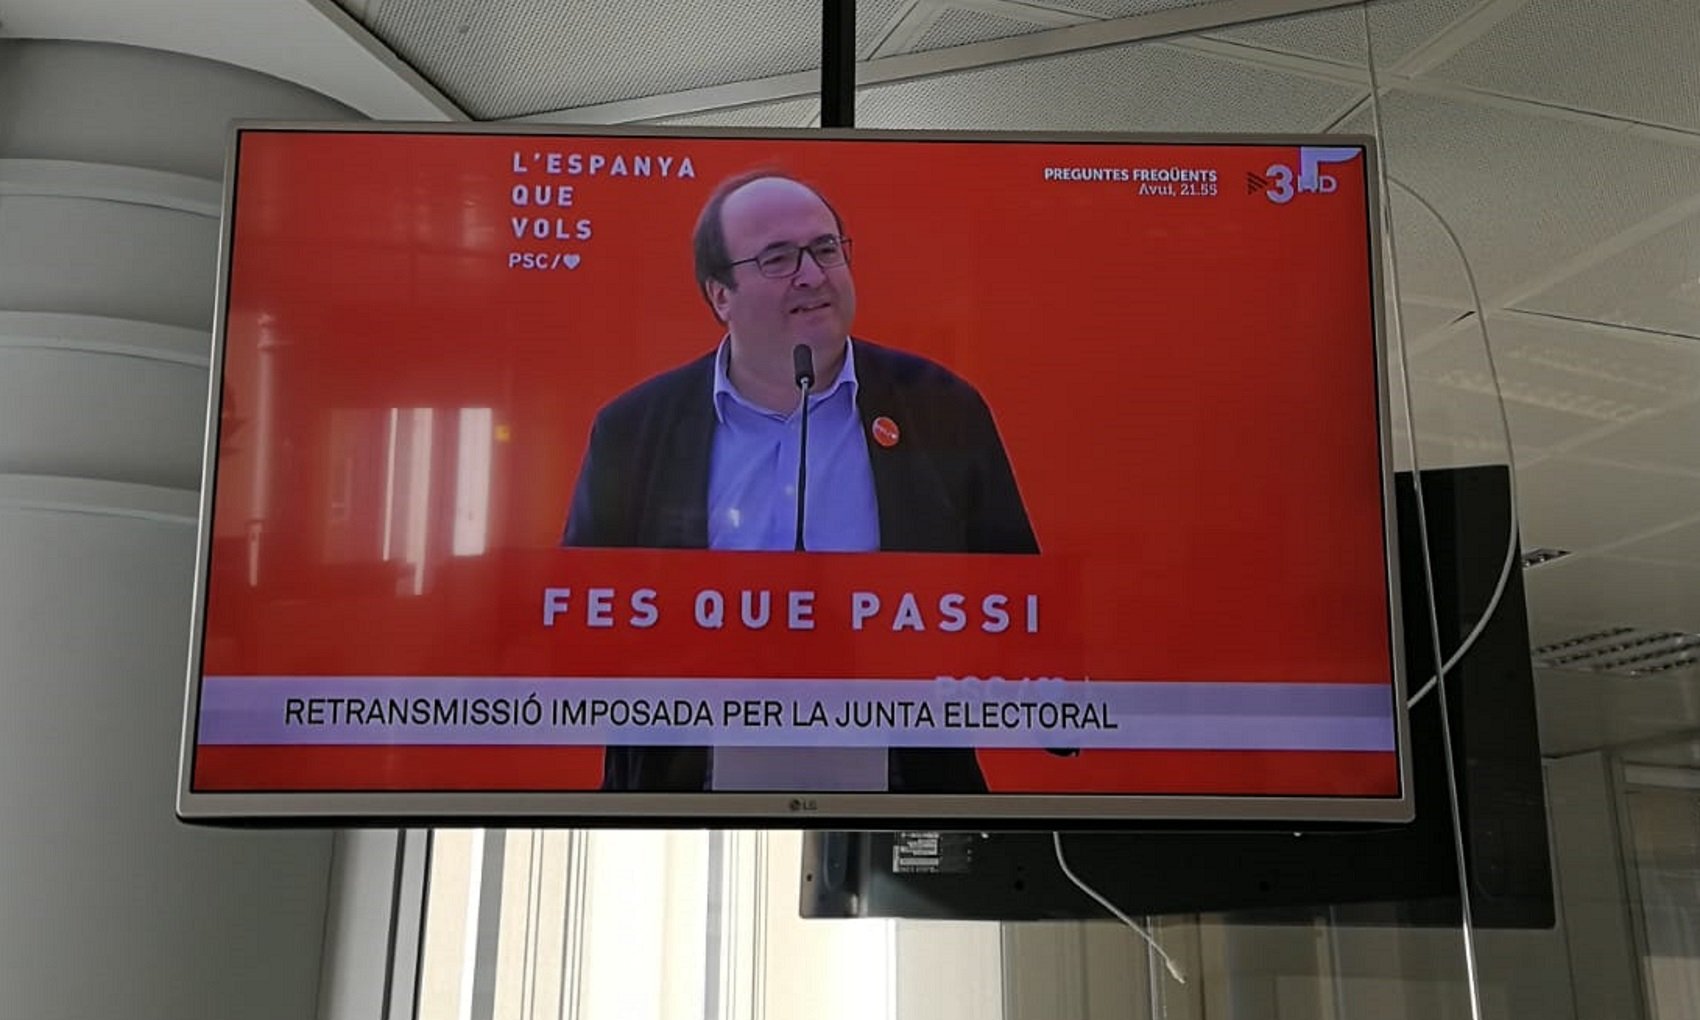 Mítings del PSC, Ciutadans i PP a TV3 per imposició de la JEC